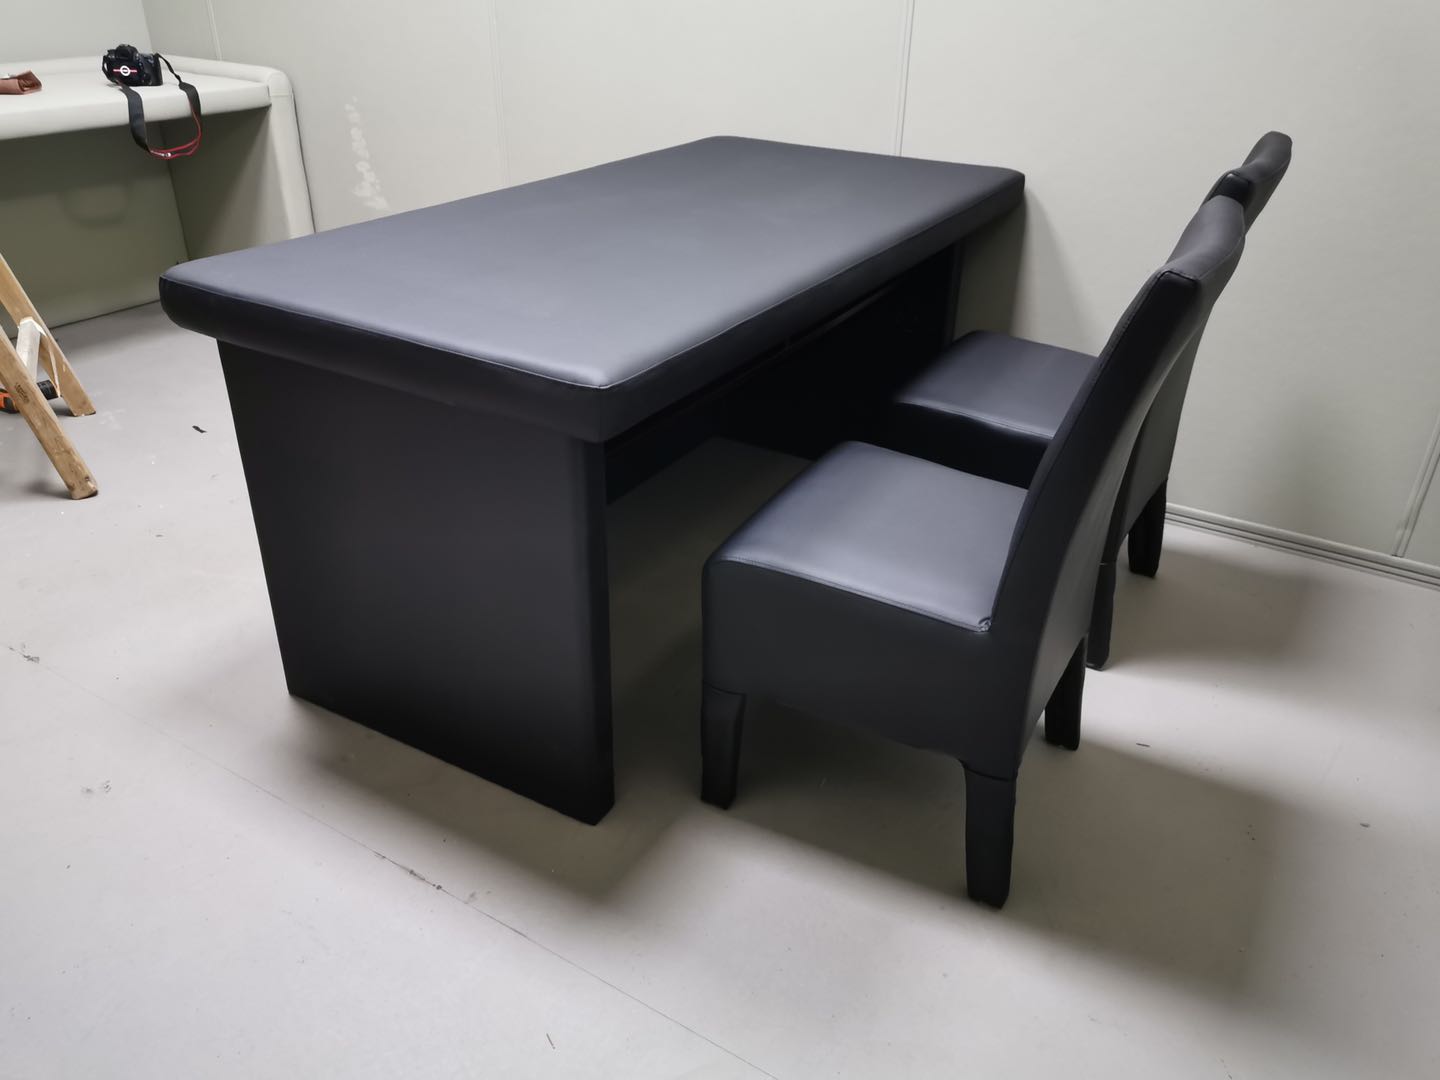 审讯椅厂家生产的犯人椅可测血压和智能审讯桌